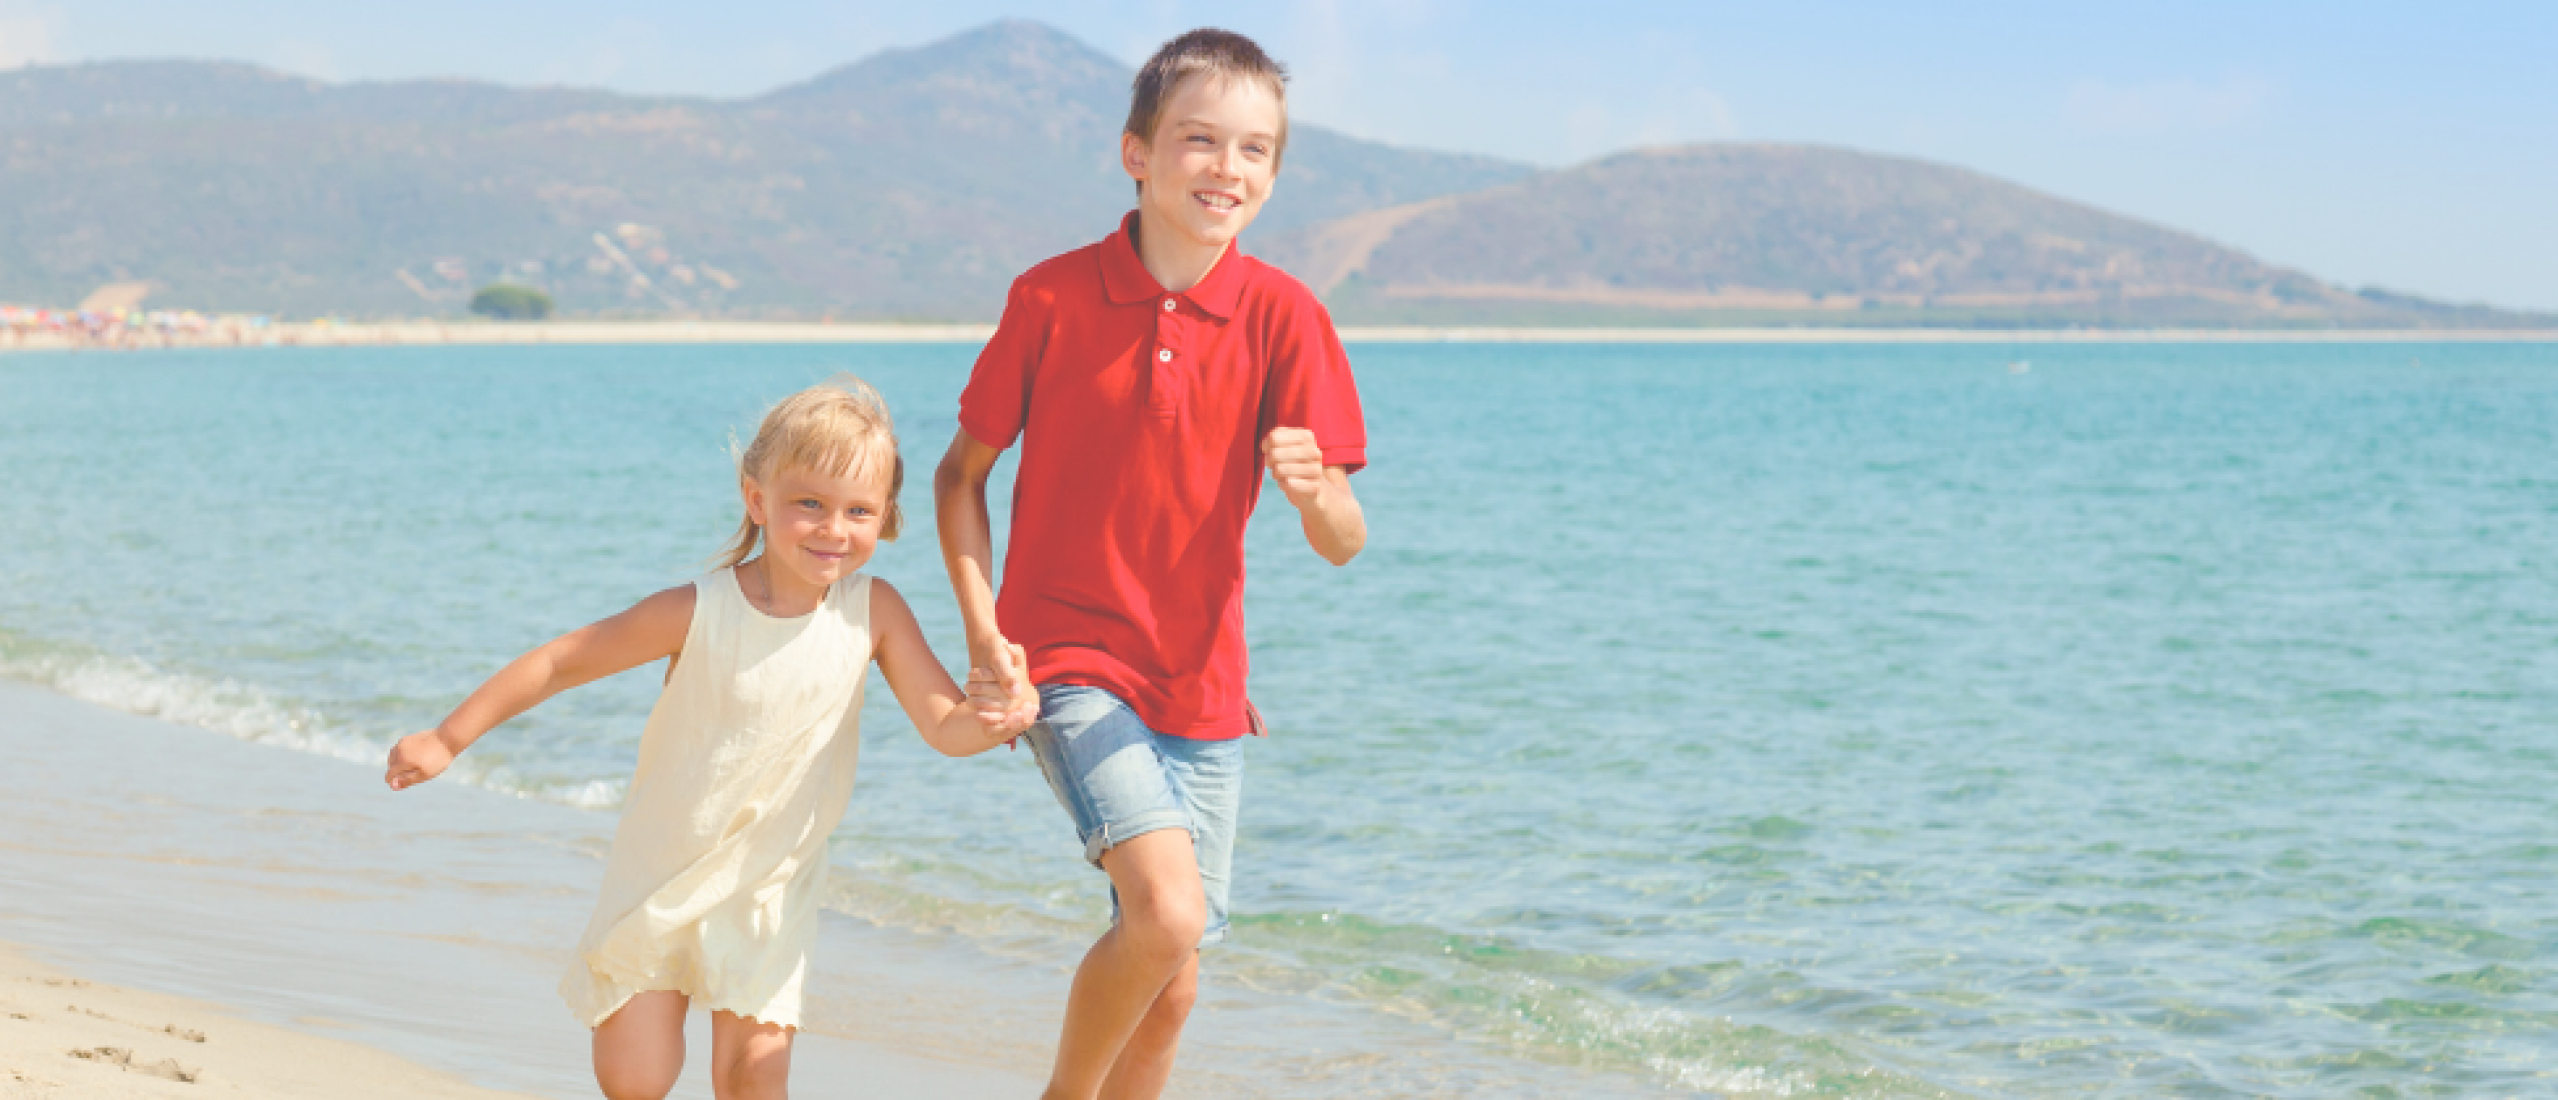 Verbeter de dynamiek en verbinding tussen je kinderen deze zomervakantie: laat ze samen iets spannends doen